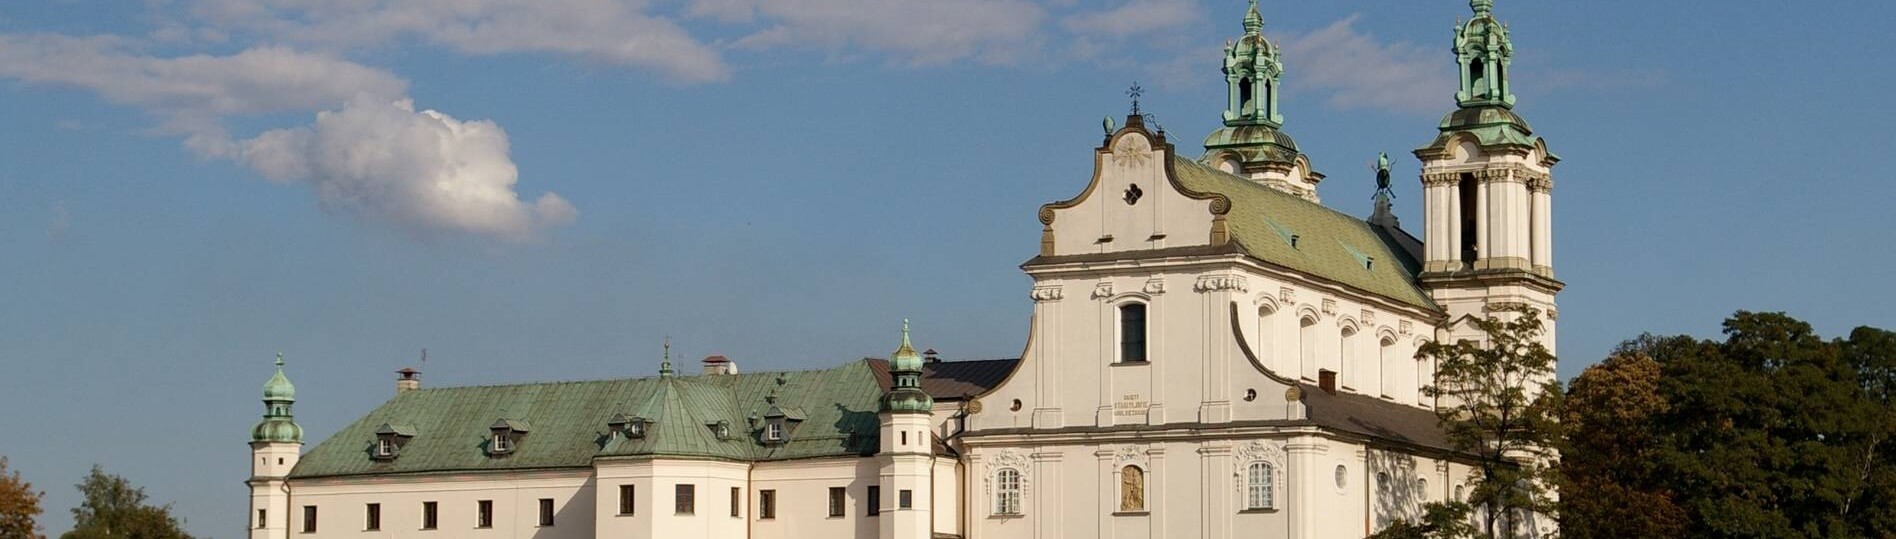 Klasztor na Skałce - polski panteon narodowy